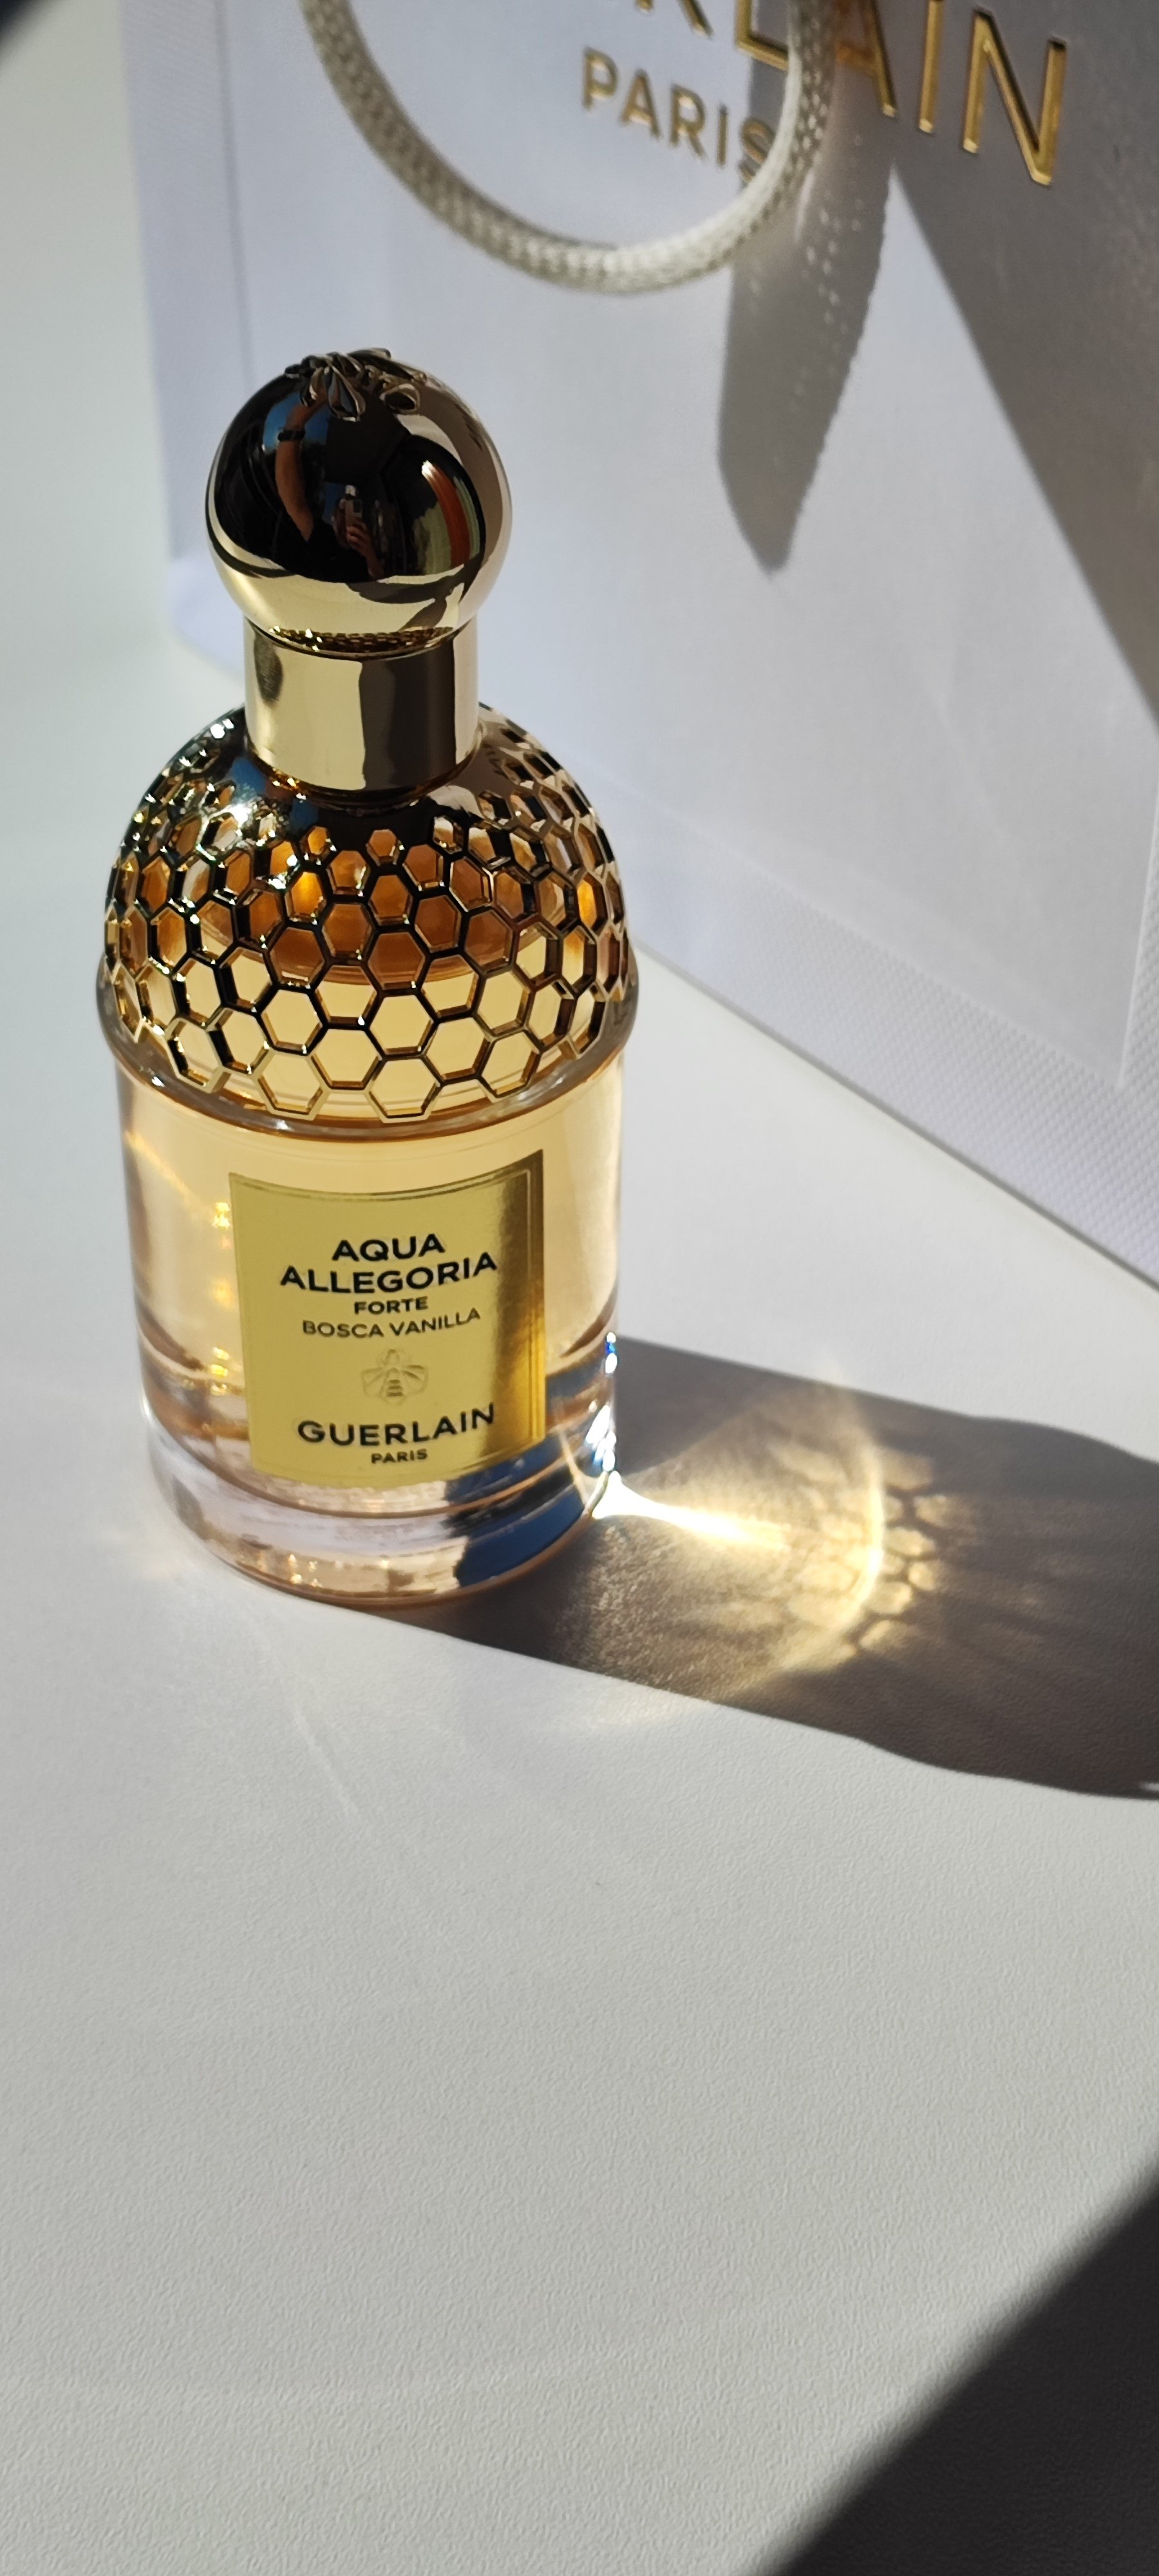 Aqua Allegoria Forte Bosca Vanilla Guerlain Eau De Parfum 200ml